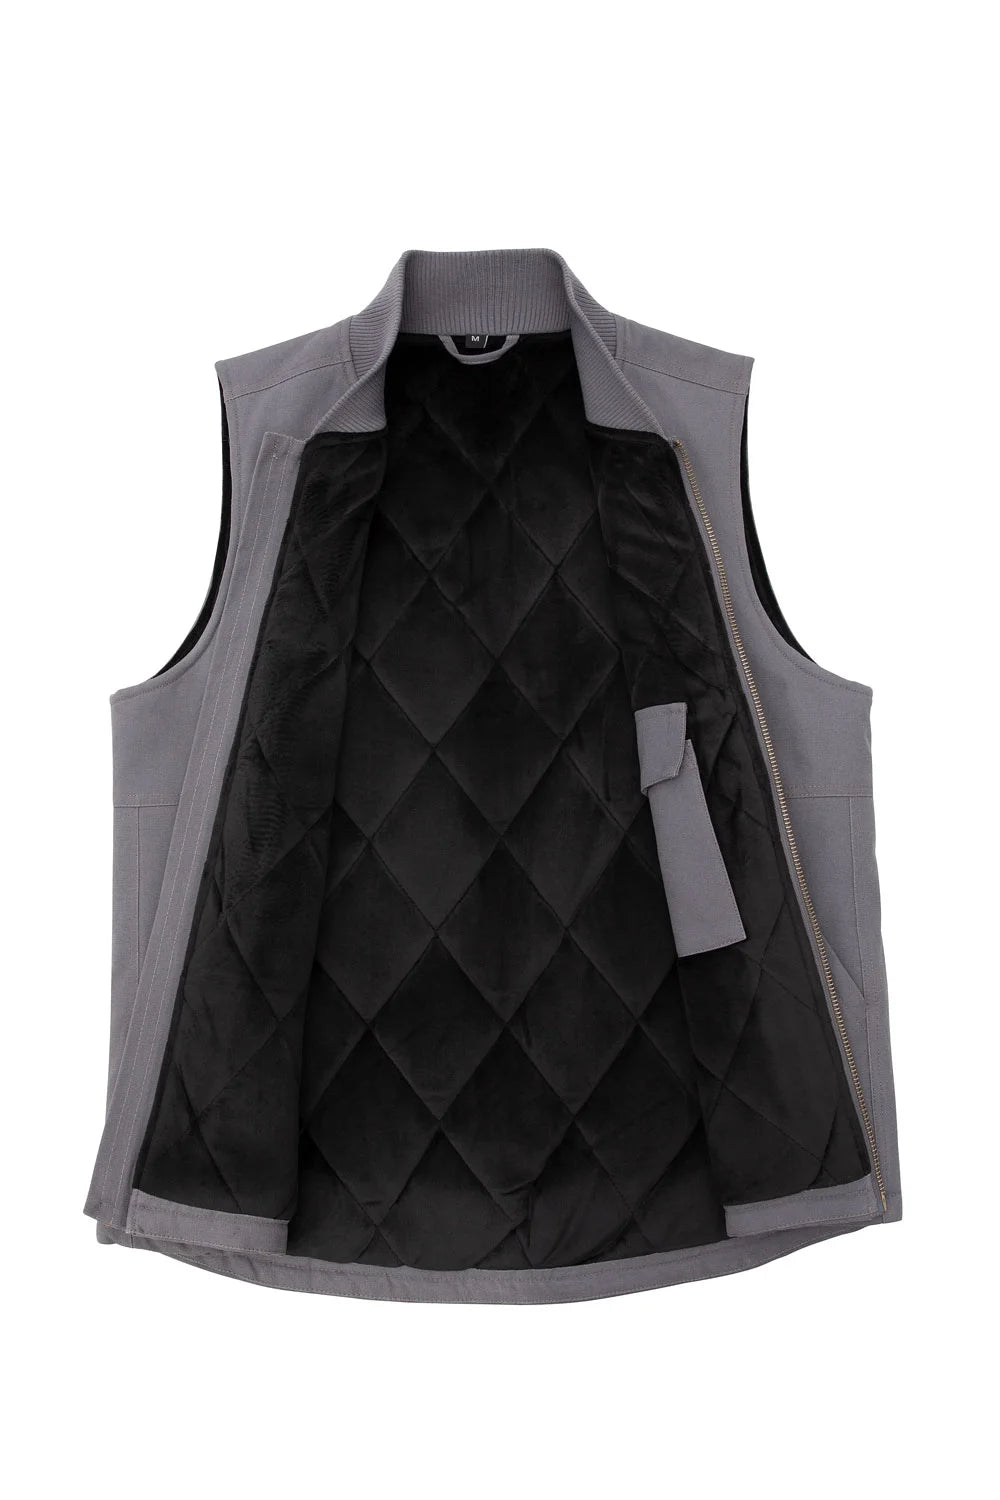 Men's Reversible Vest Plaid Fleece Lined Outdoor Work Travel Vests –  FlannelGo